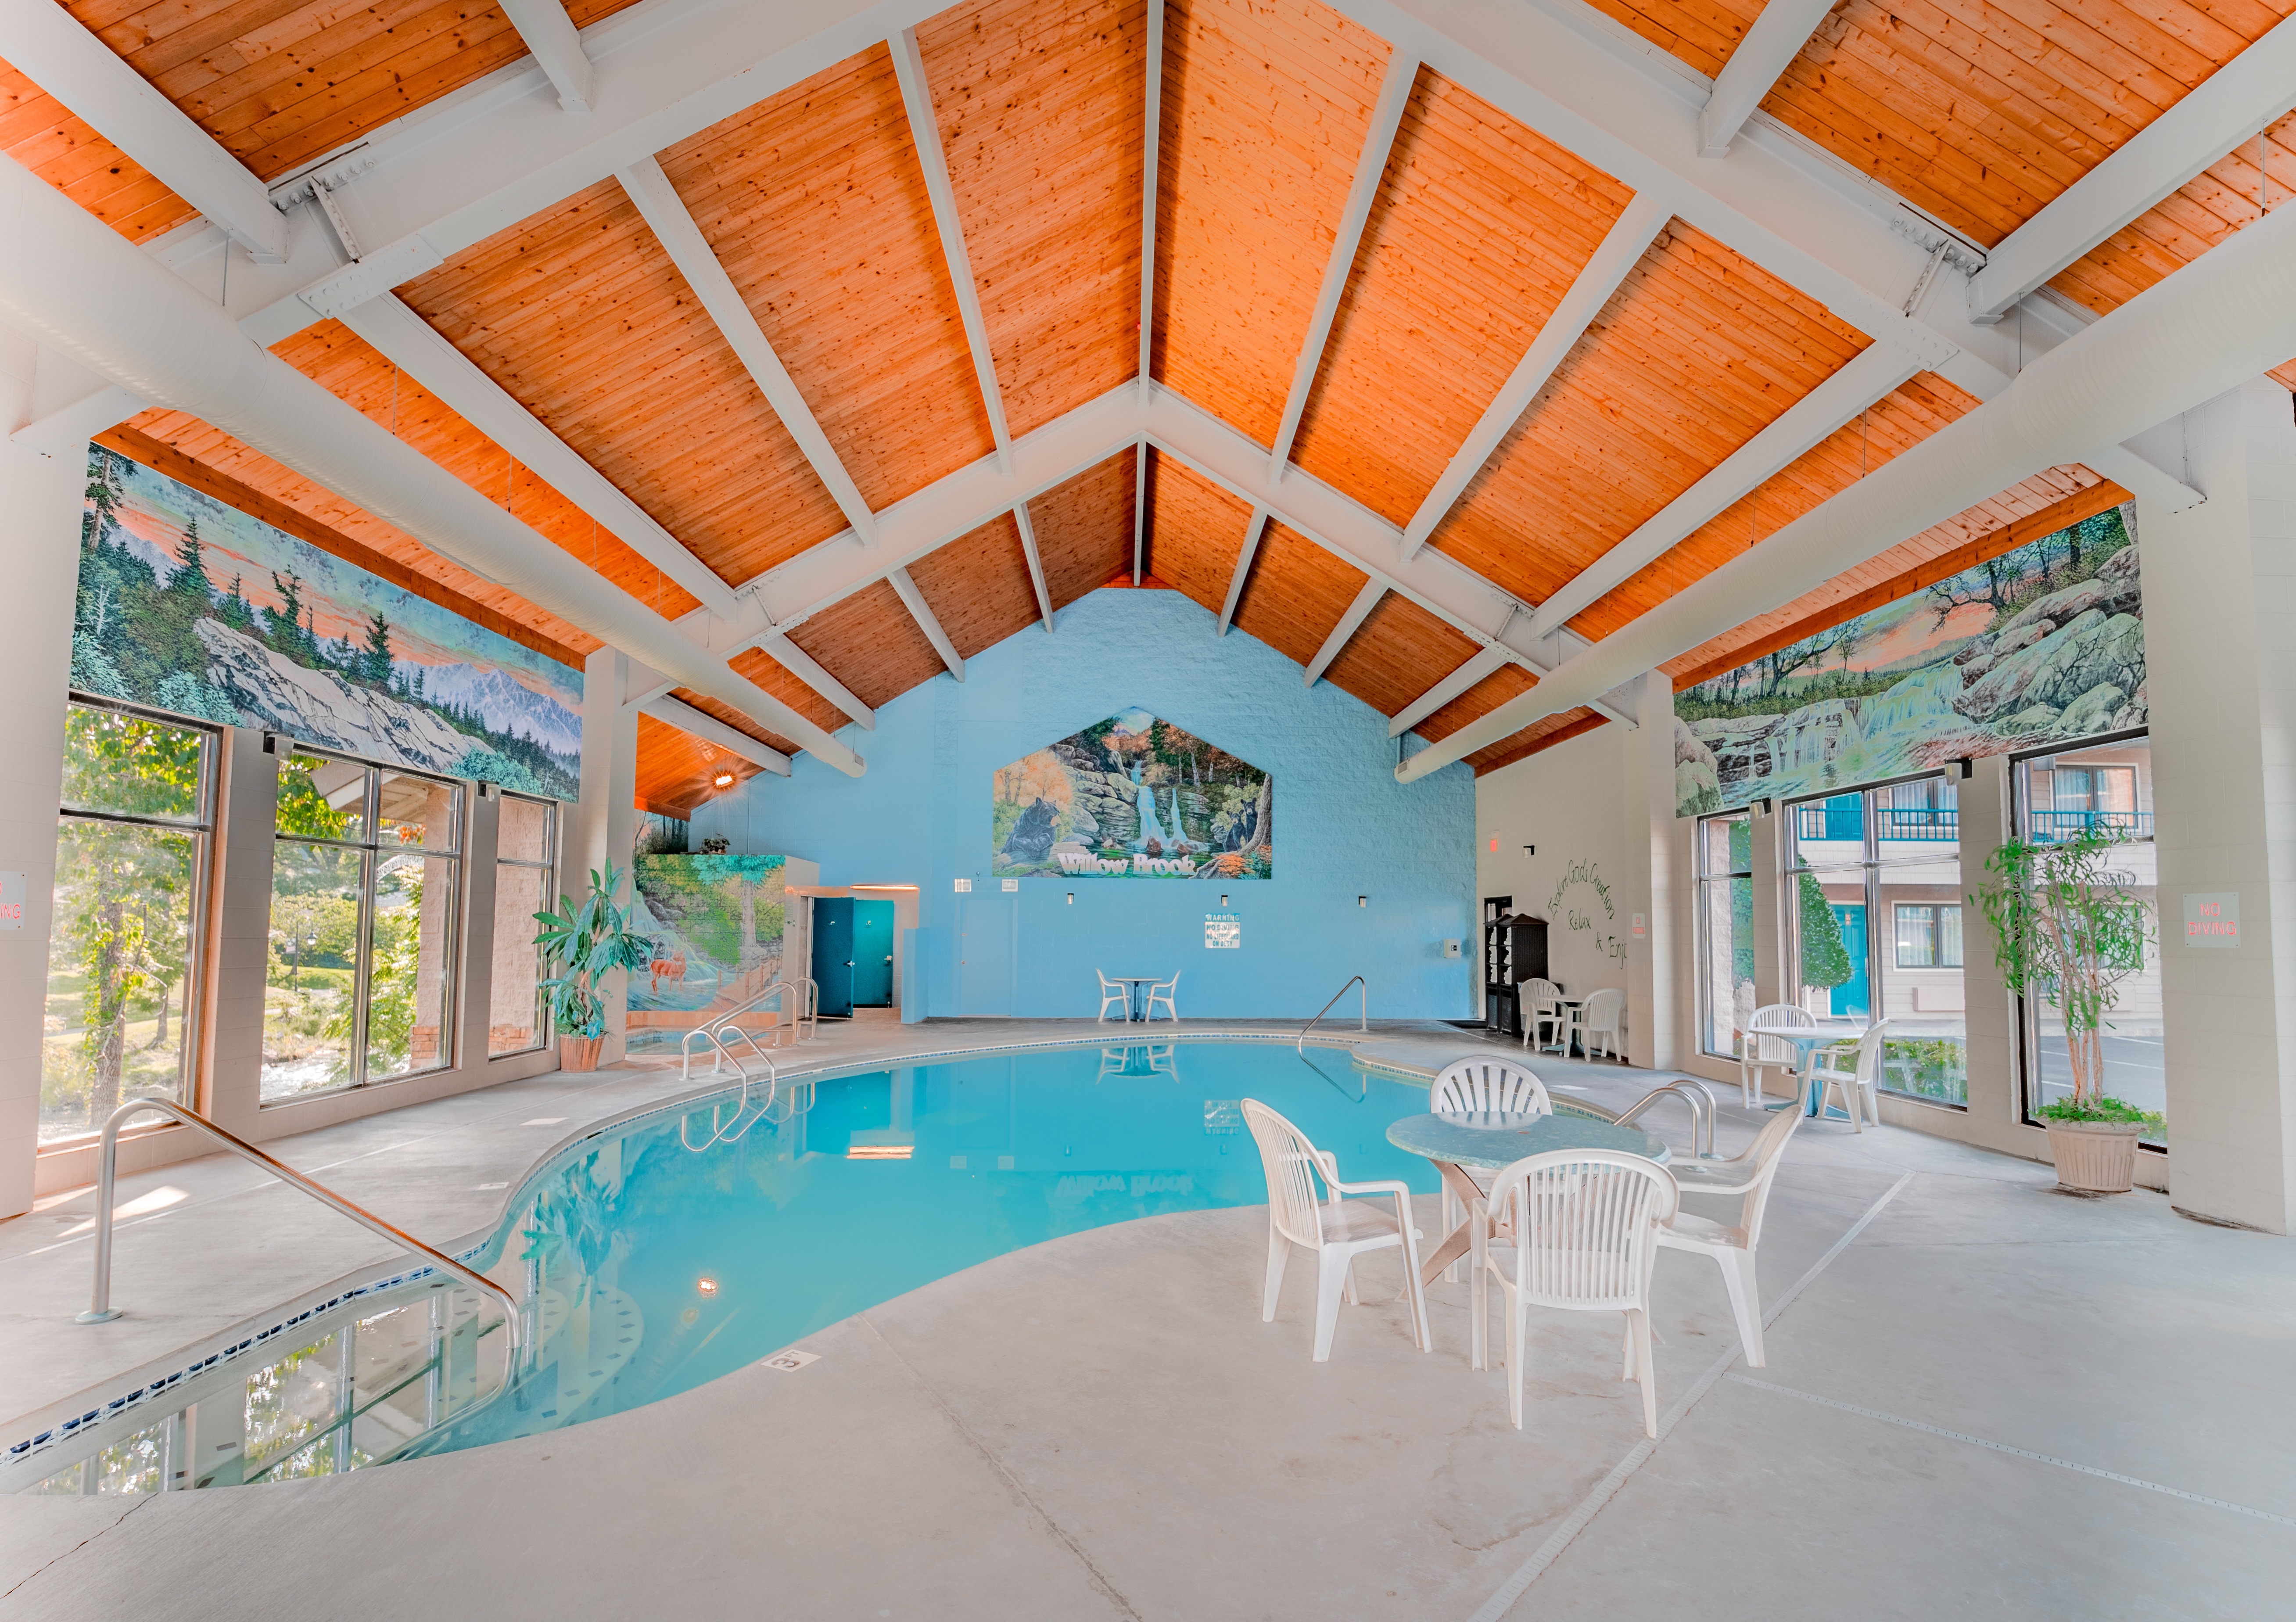 Willow Brook Lodge Indoor Pool